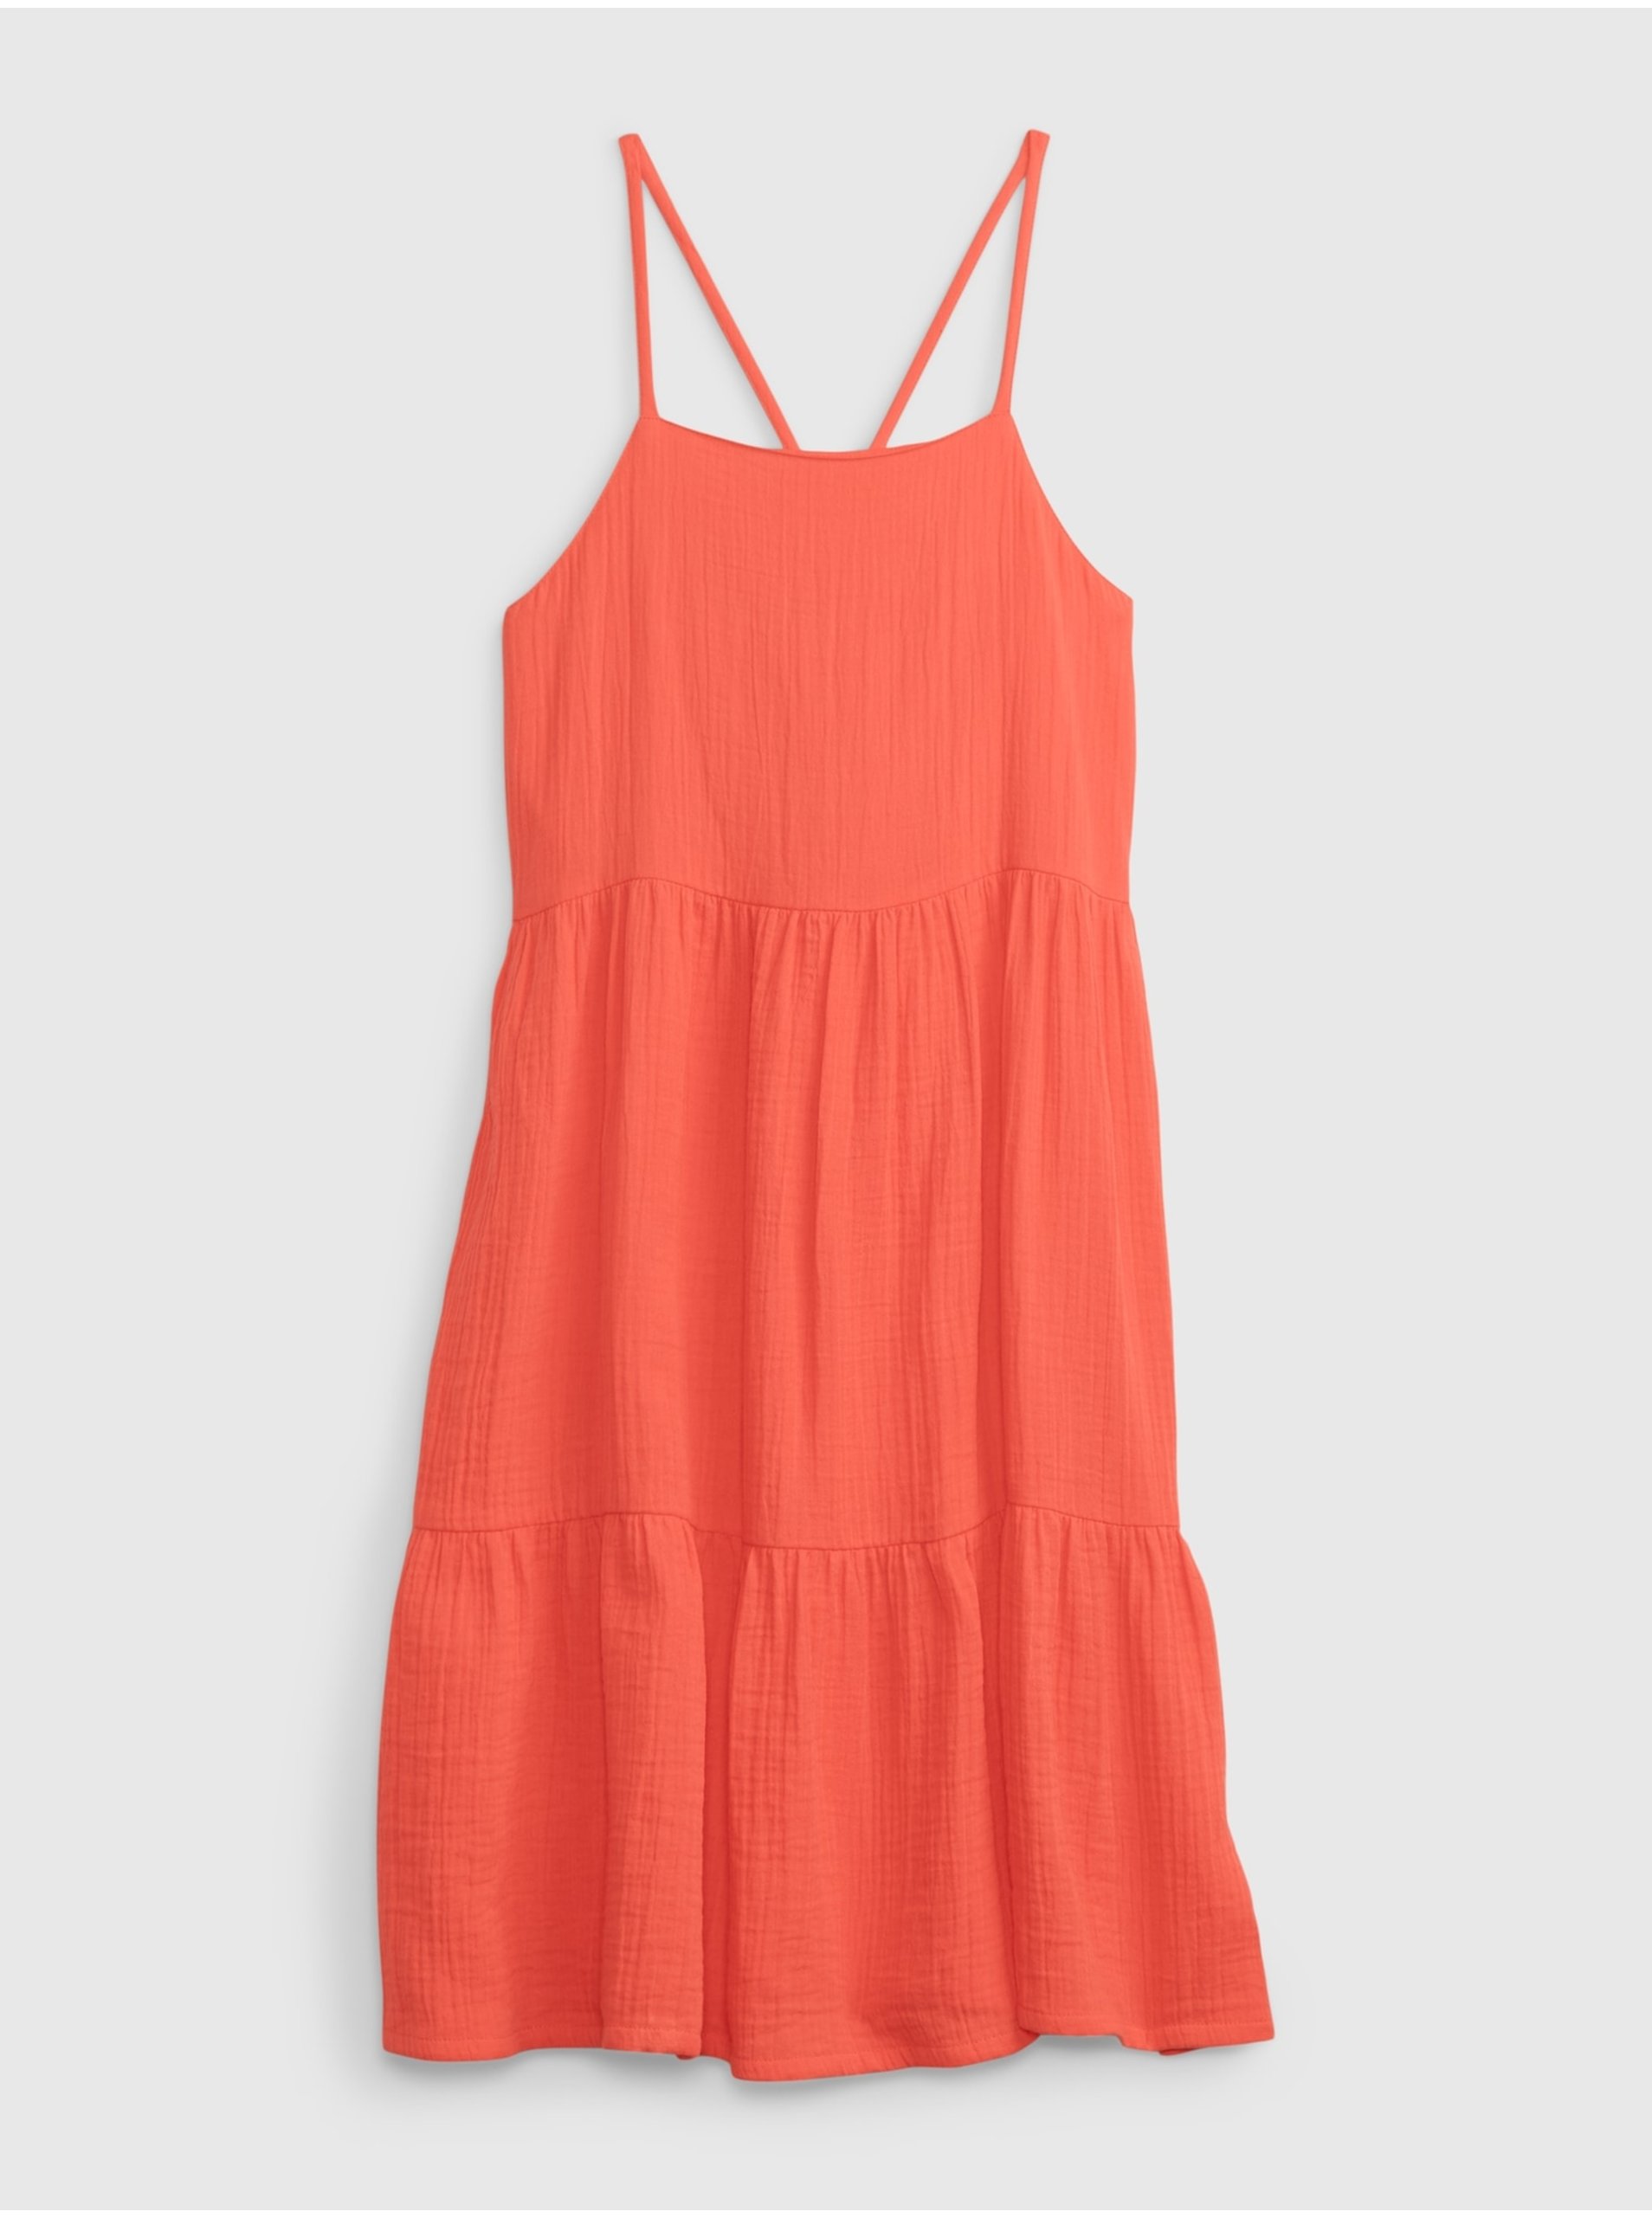 E-shop Oranžové holčičí šaty volánové šaty